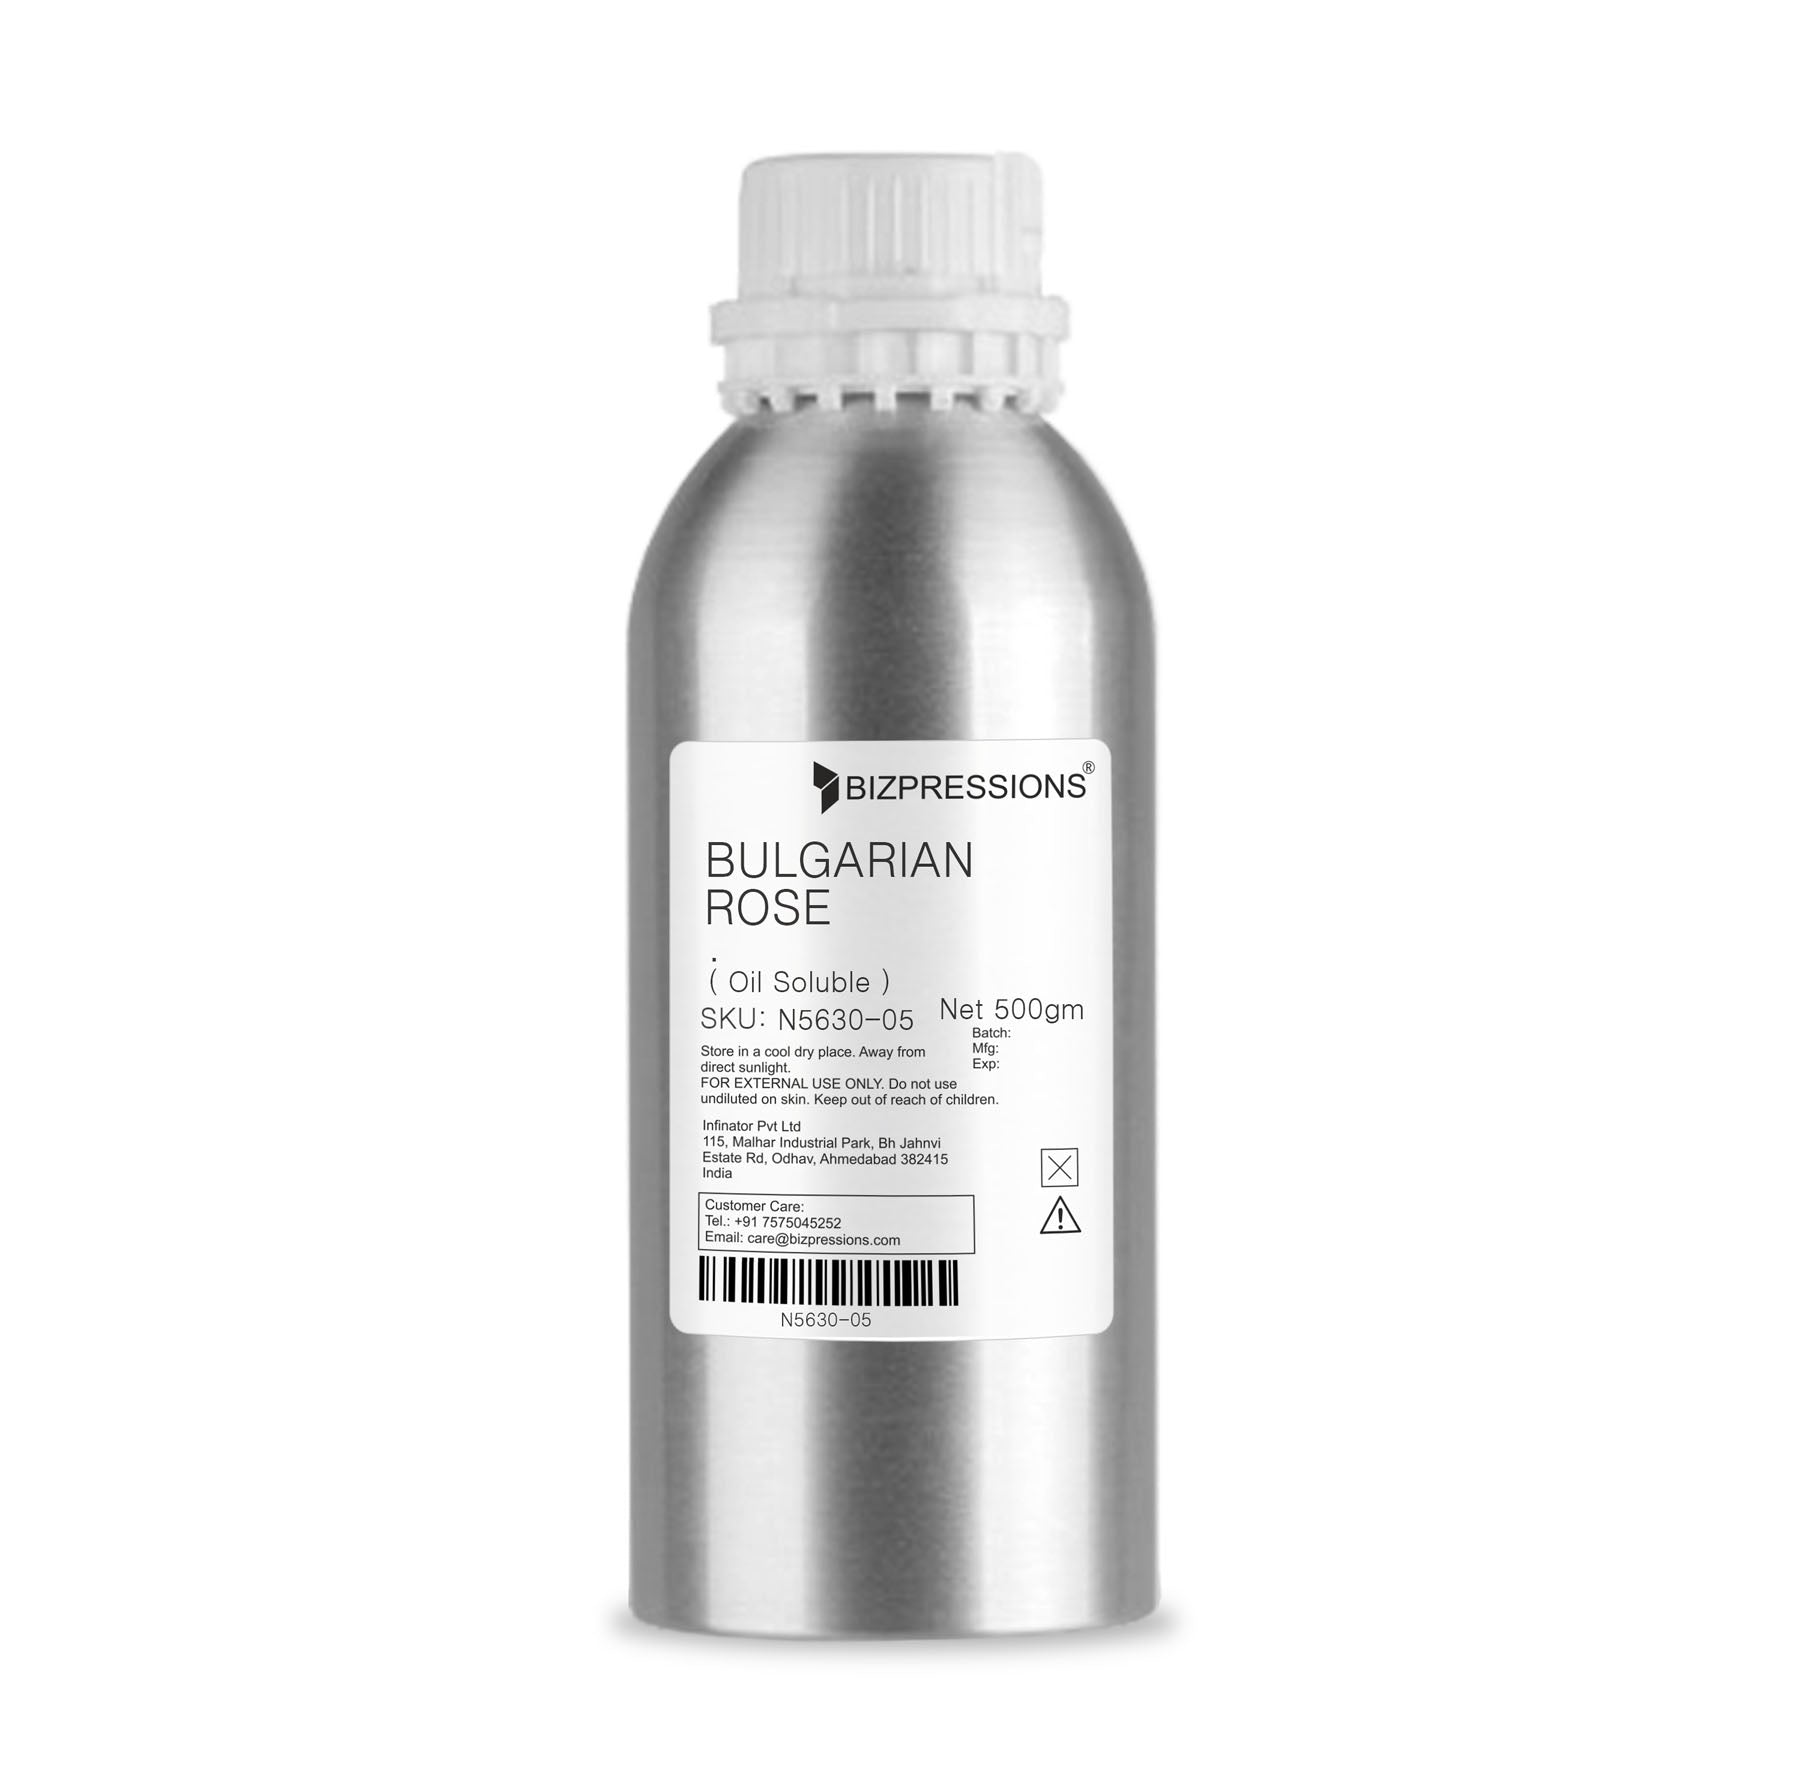 BULGARIAN ROSE - Fragrance ( Oil Soluble ) - 500 gm